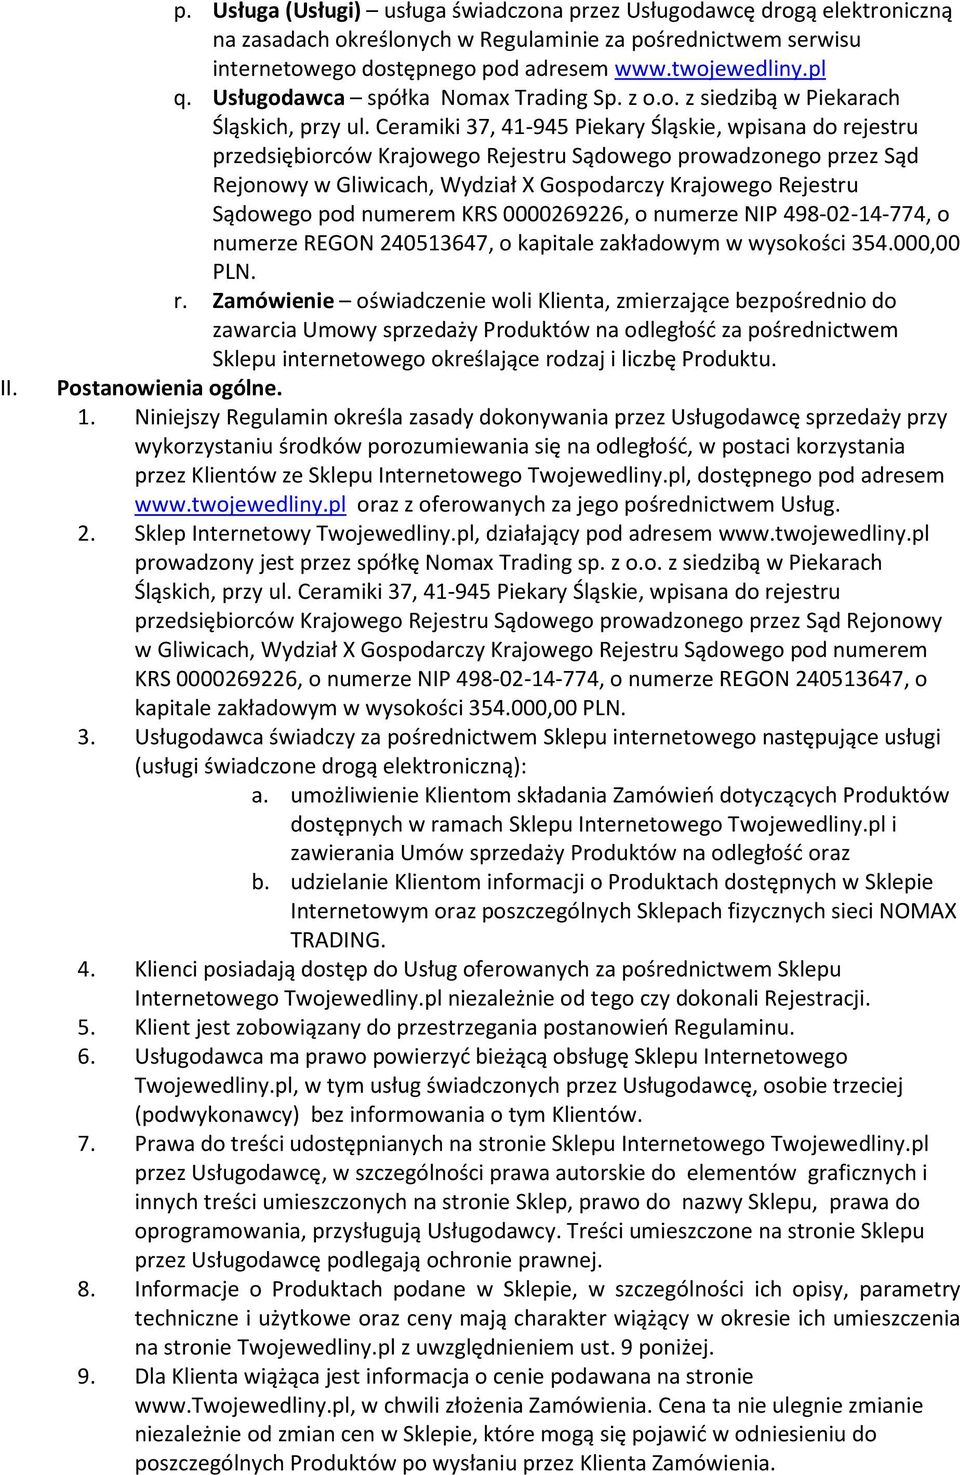 Ceramiki 37, 41-945 Piekary Śląskie, wpisana do rejestru przedsiębiorców Krajowego Rejestru Sądowego prowadzonego przez Sąd Rejonowy w Gliwicach, Wydział X Gospodarczy Krajowego Rejestru Sądowego pod